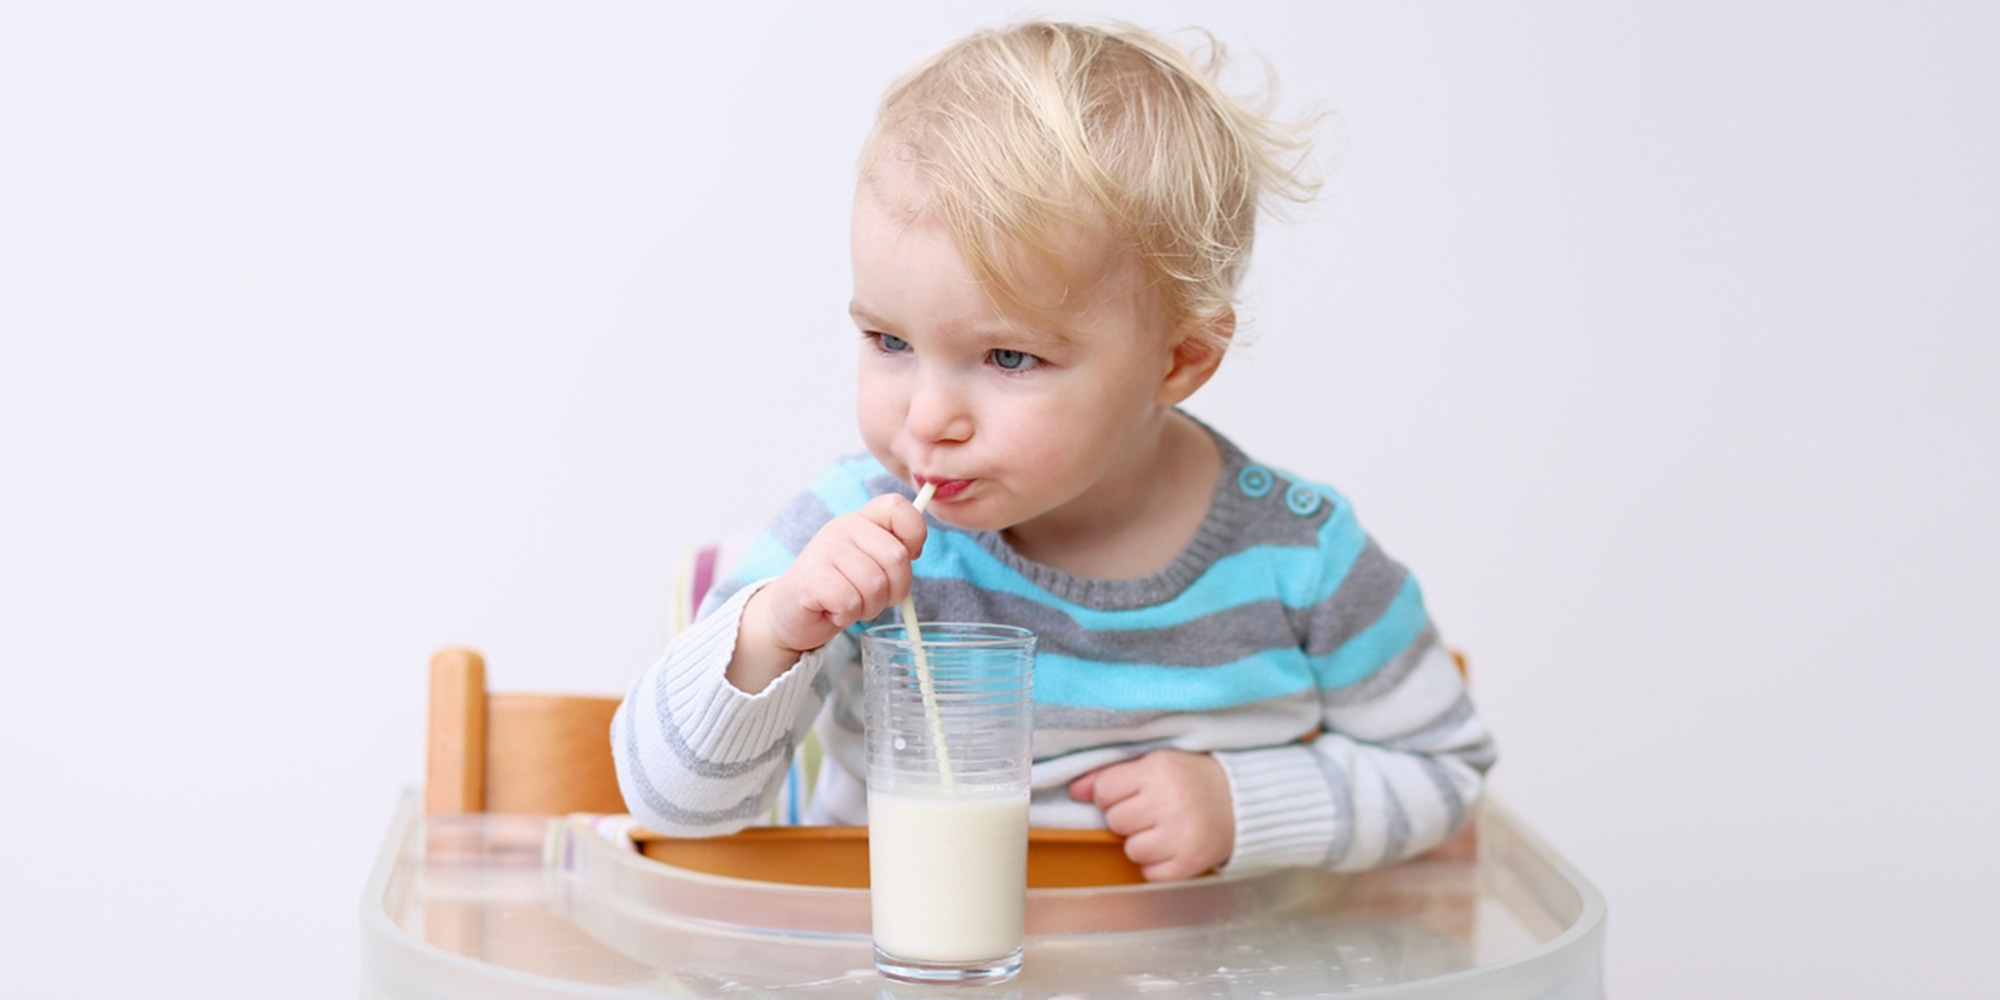 ▲嬰兒吐奶是寶寶將喝下的奶水從胃部又吐出來的現象，大約在12個月大時，寶寶吐奶狀況就會停止。